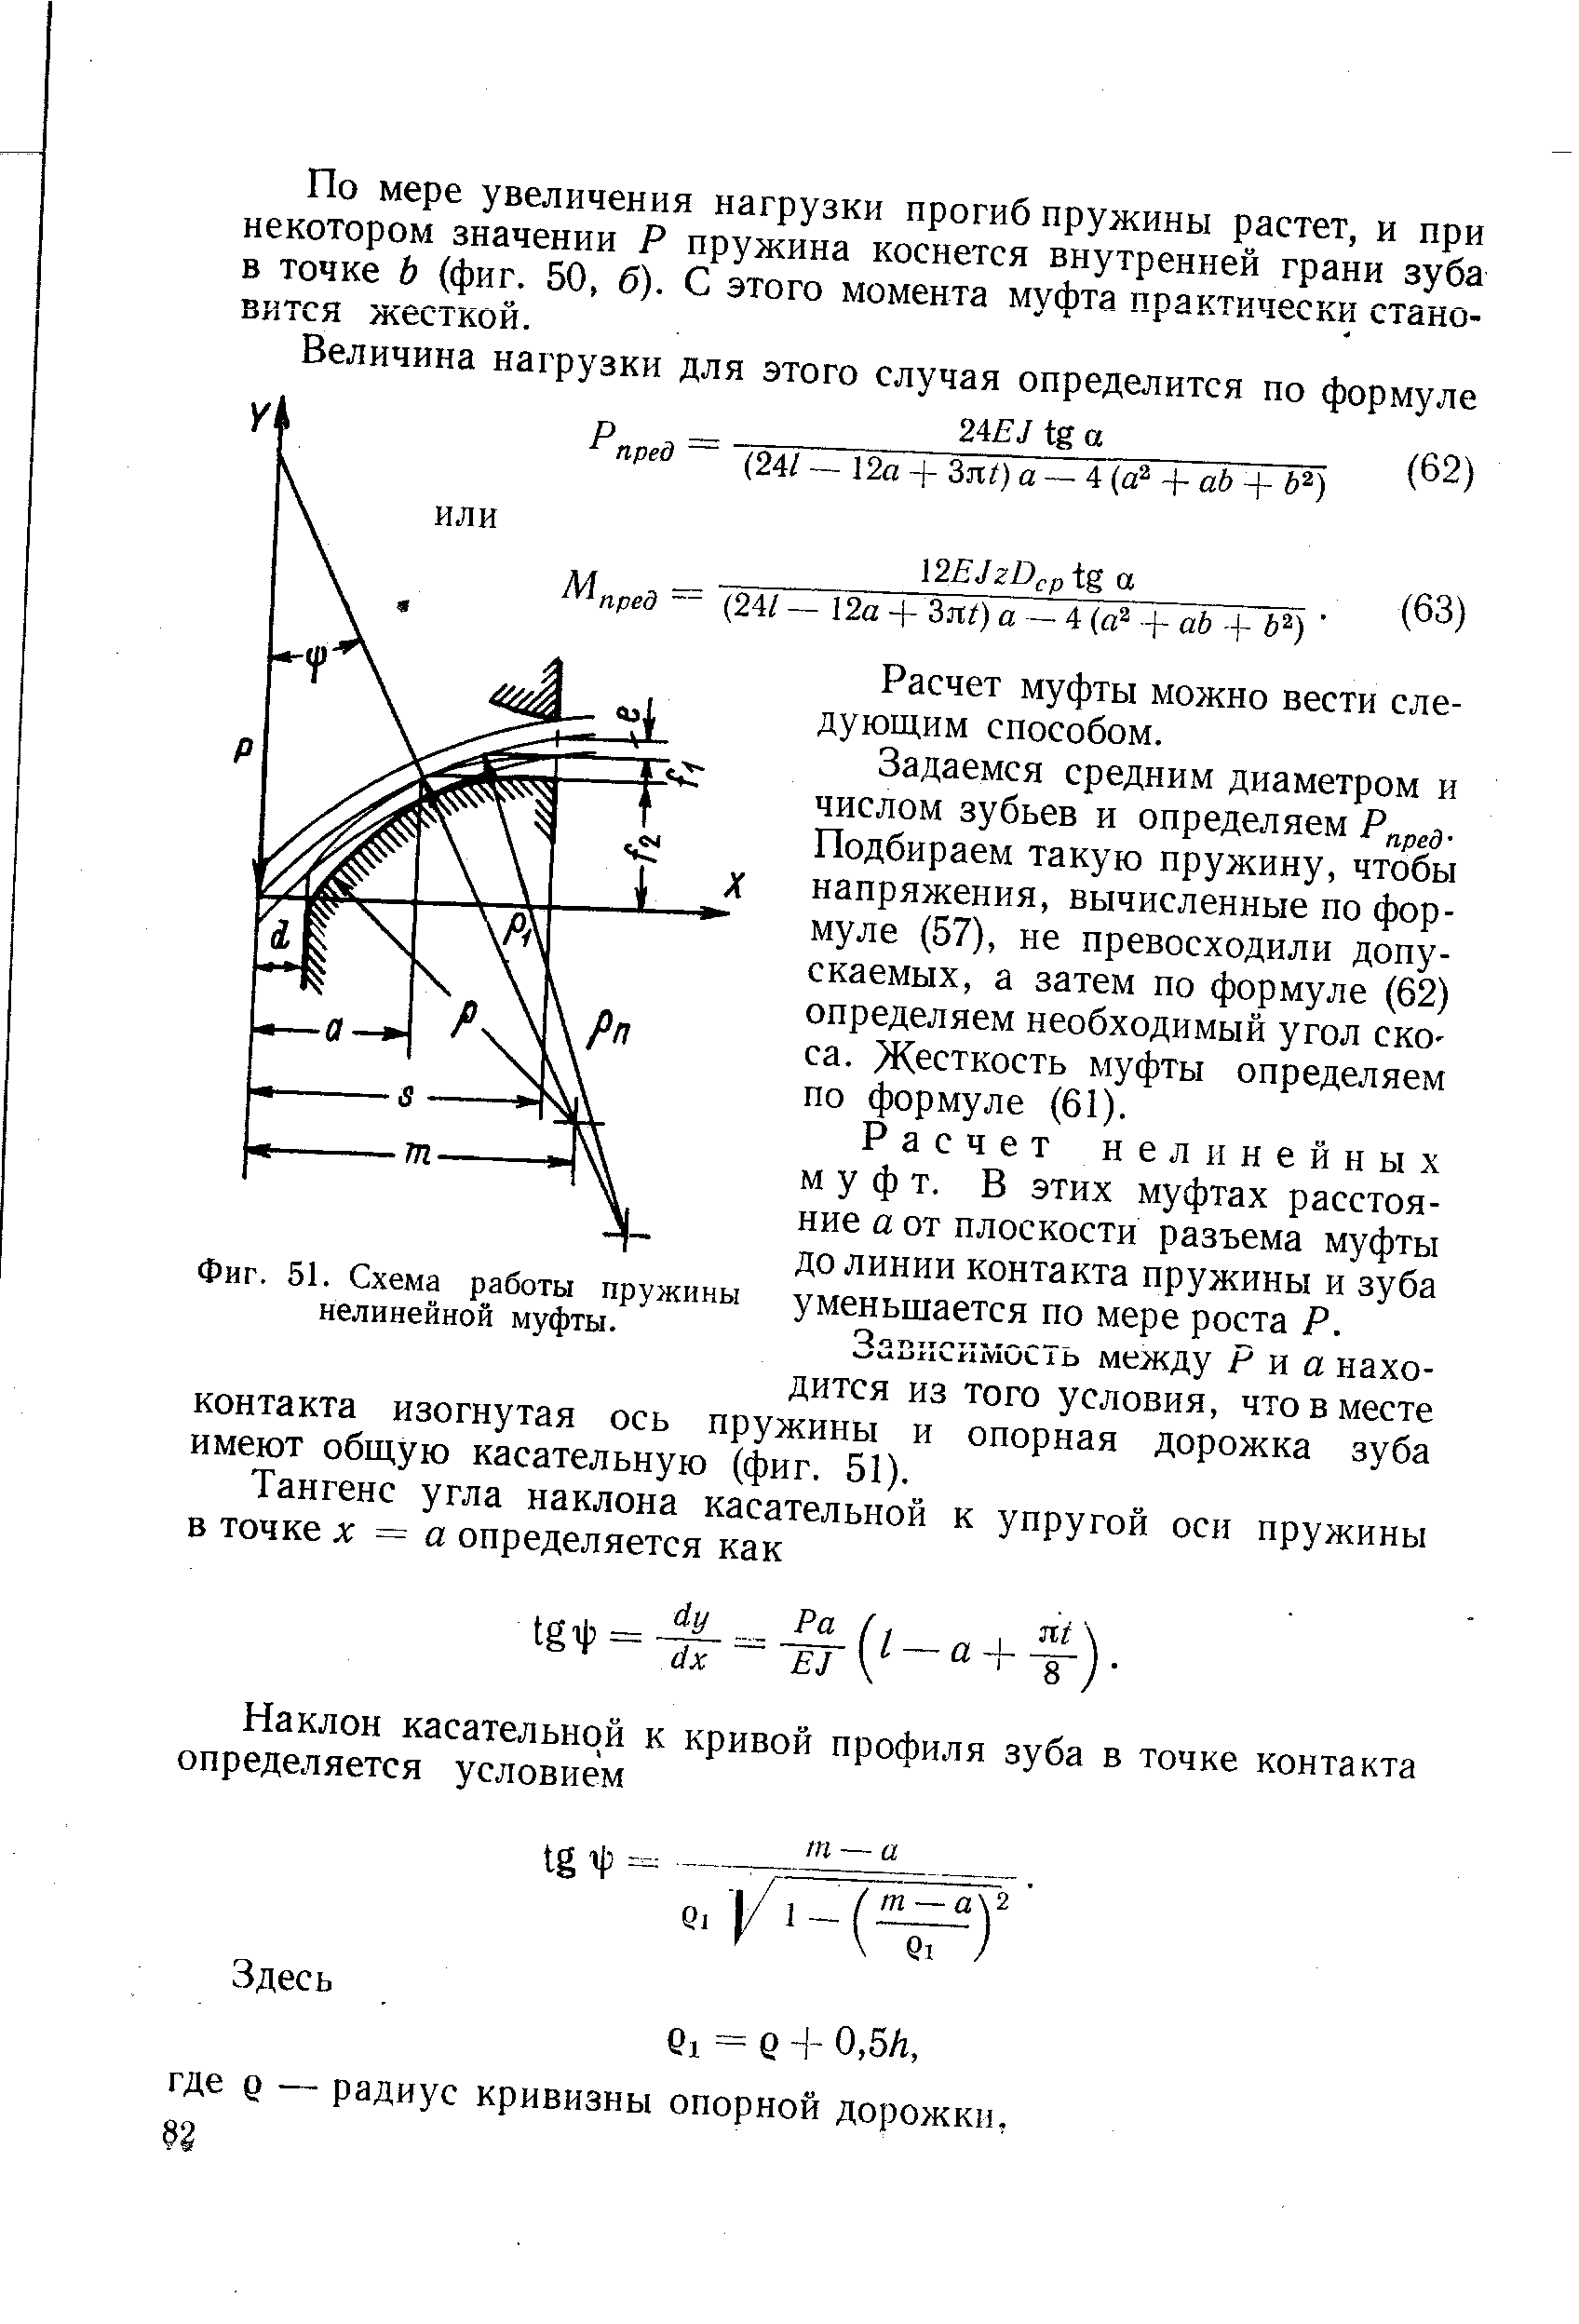 Фиг. 51. Схема работы пружины нелинейной муфты.
